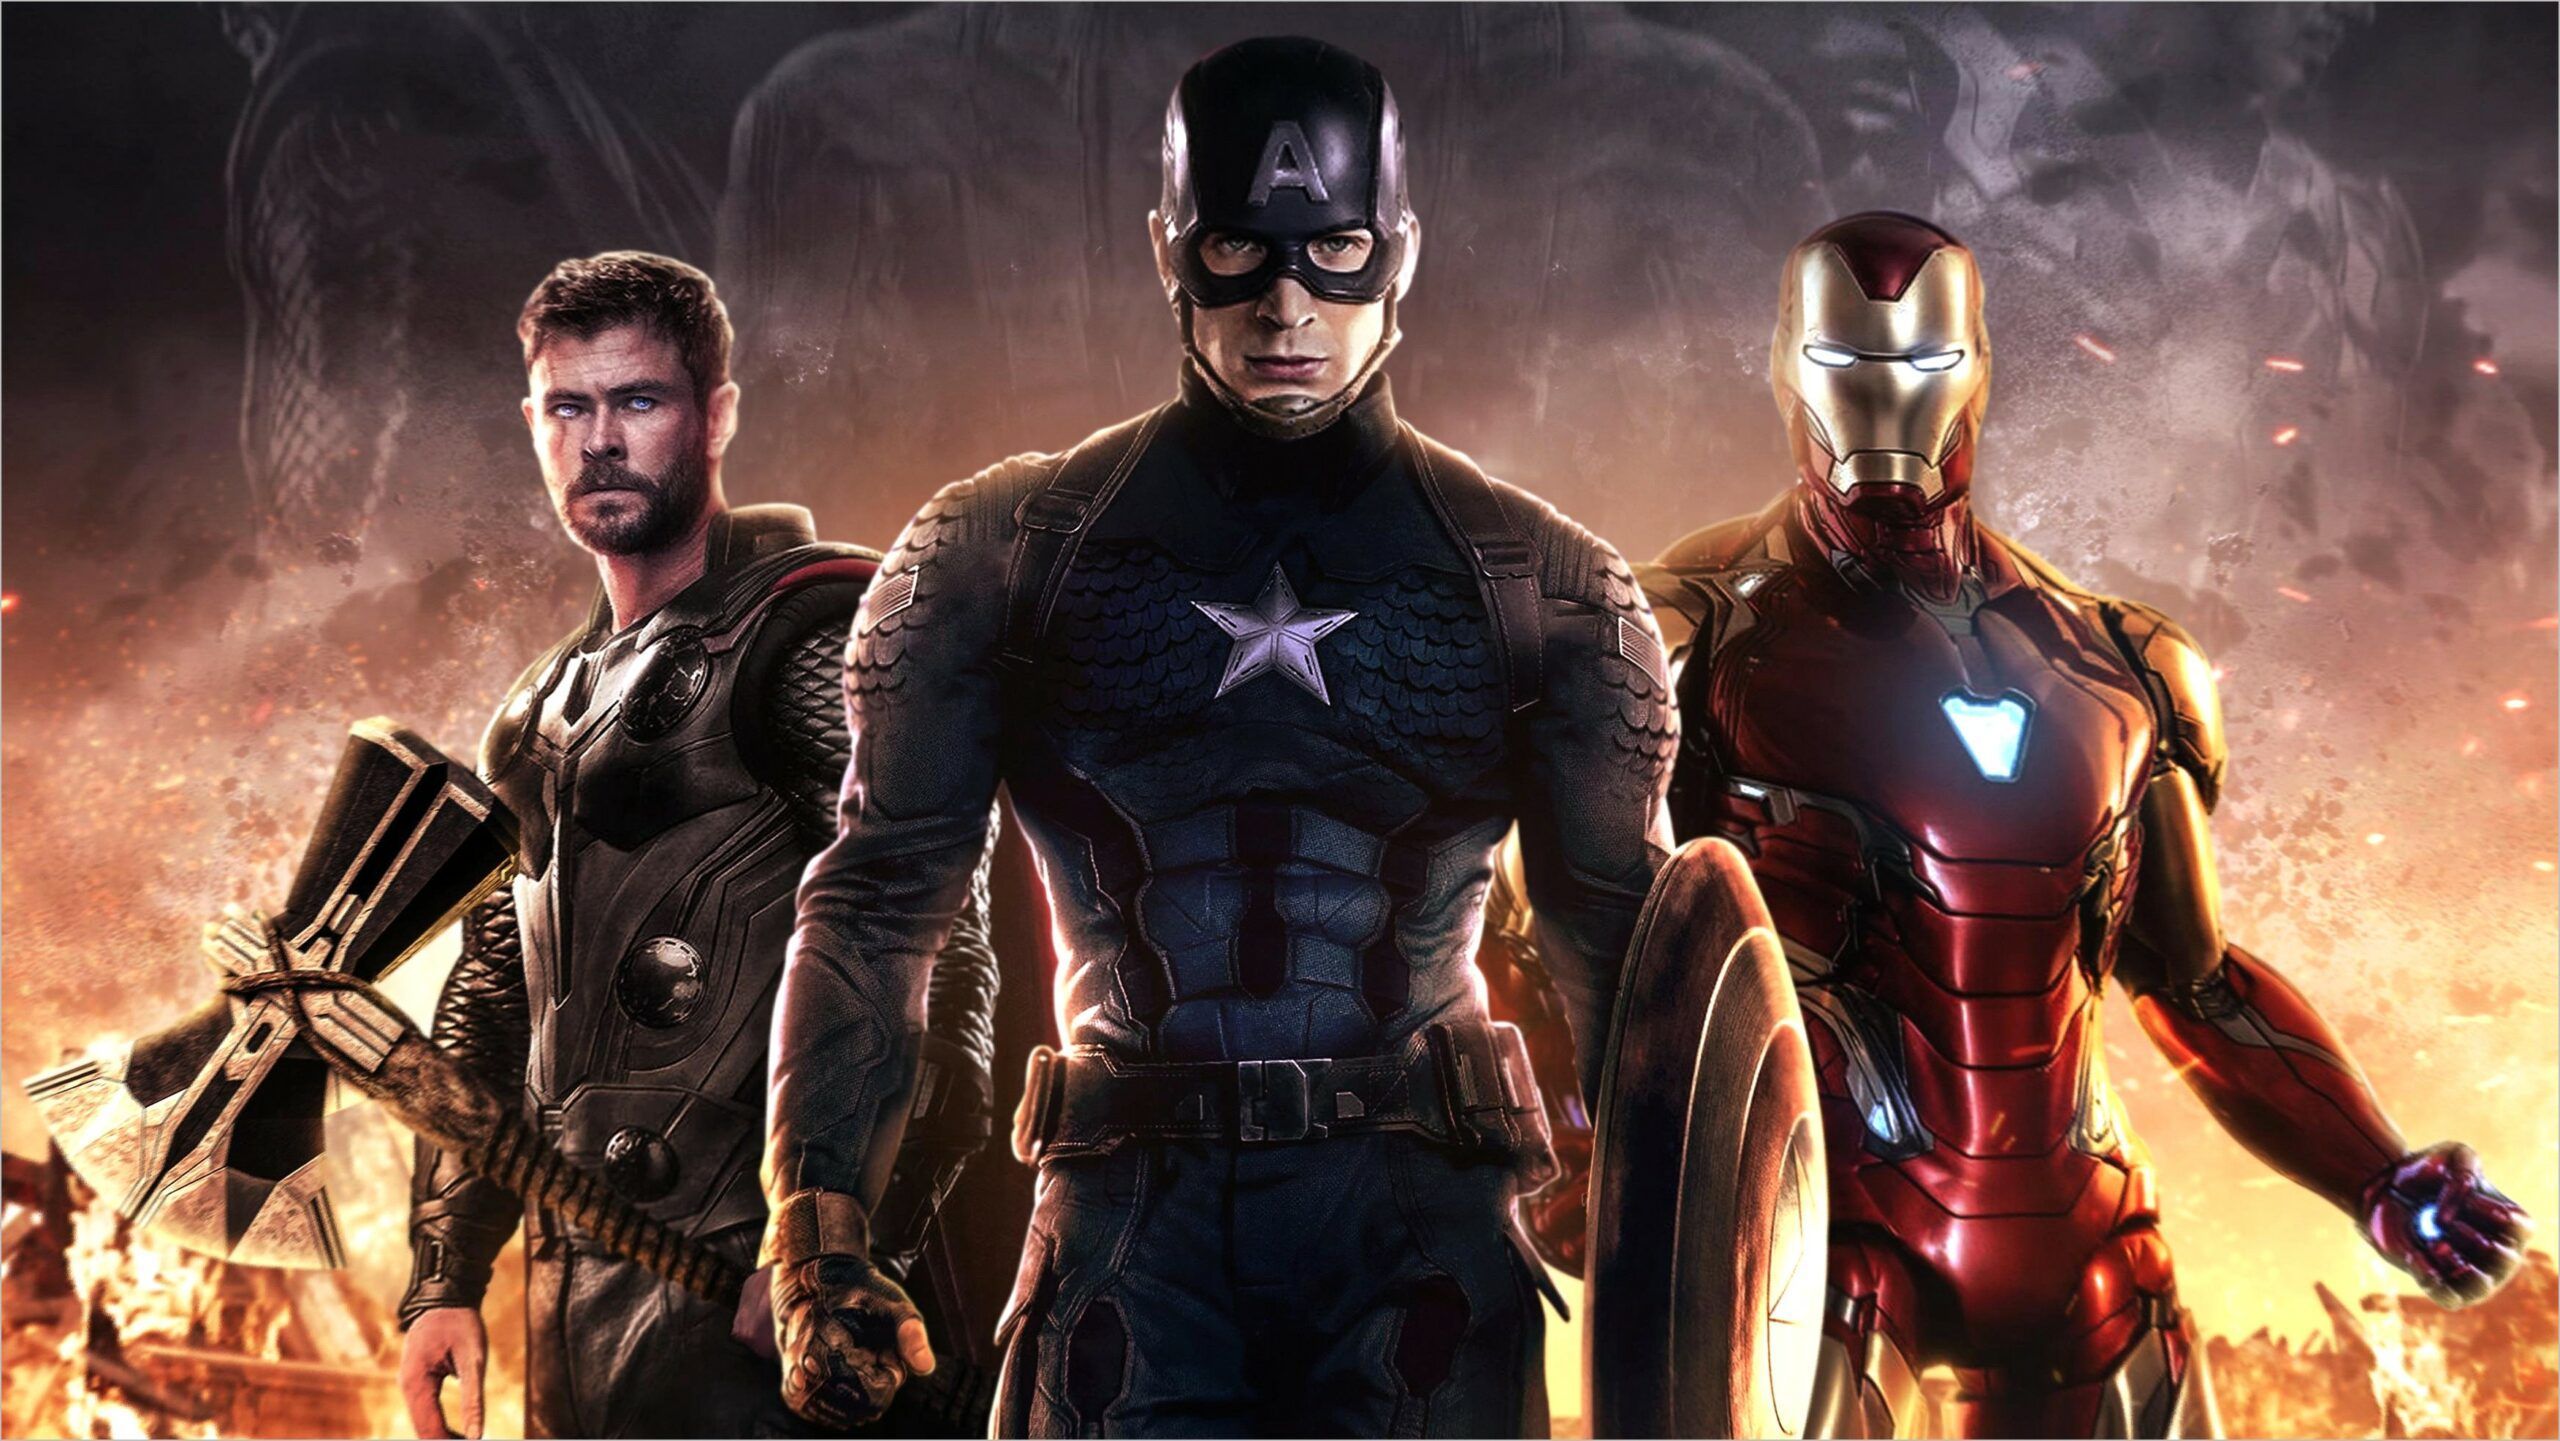 Avengers Endgame 4k Wallpaper. Avengers, Marvel studios